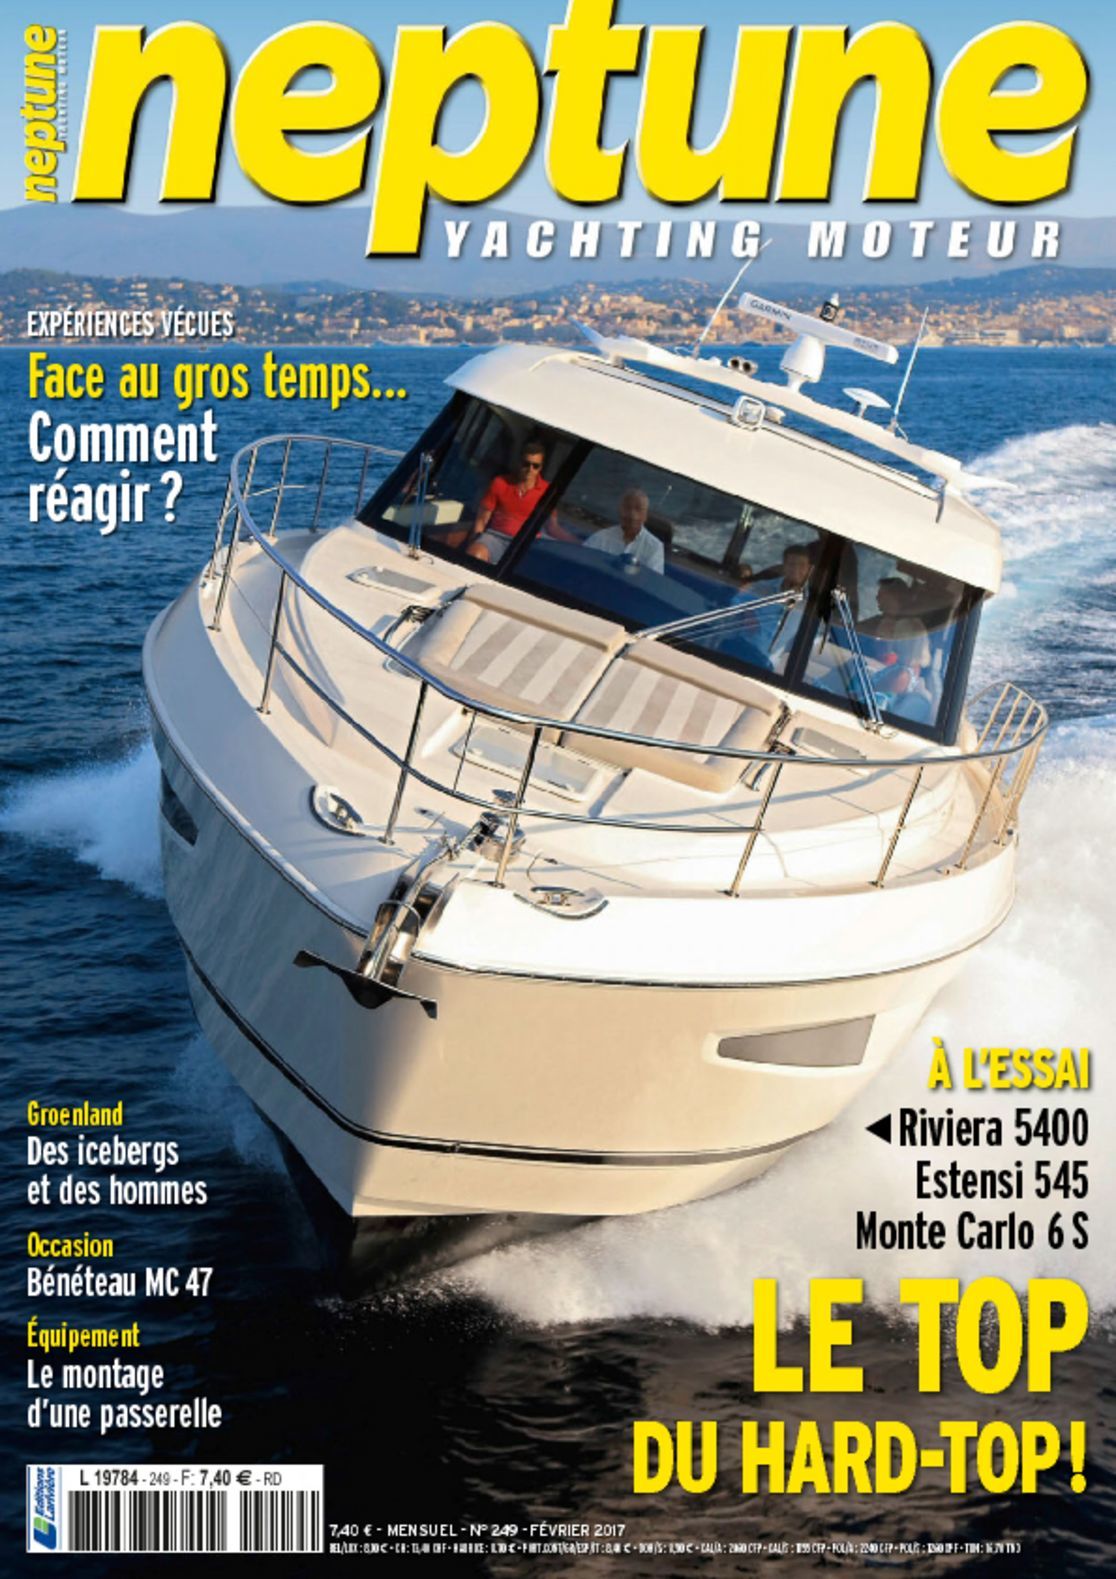 neptune yachting magazine